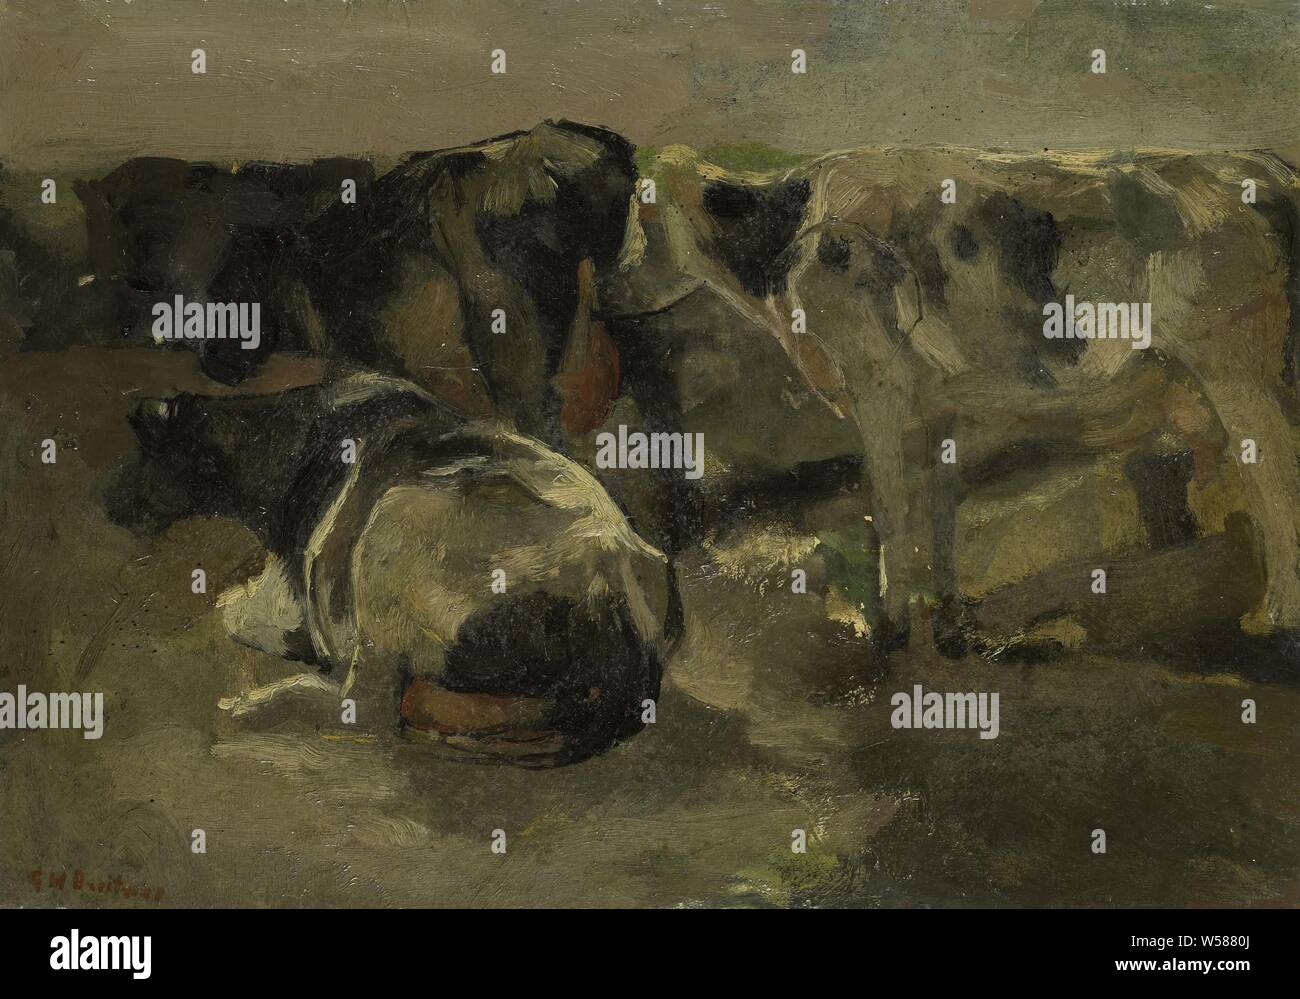 Quattro vacche, quattro mucche. Studio di standing e giacente vacche, mucca, George Hendrik Breitner (menzionato in oggetto), Paesi Bassi, c. 1880 - c. 1923, cartone, pittura a olio (vernice), h 30 cm × W 42 cm d 3,8 cm Foto Stock